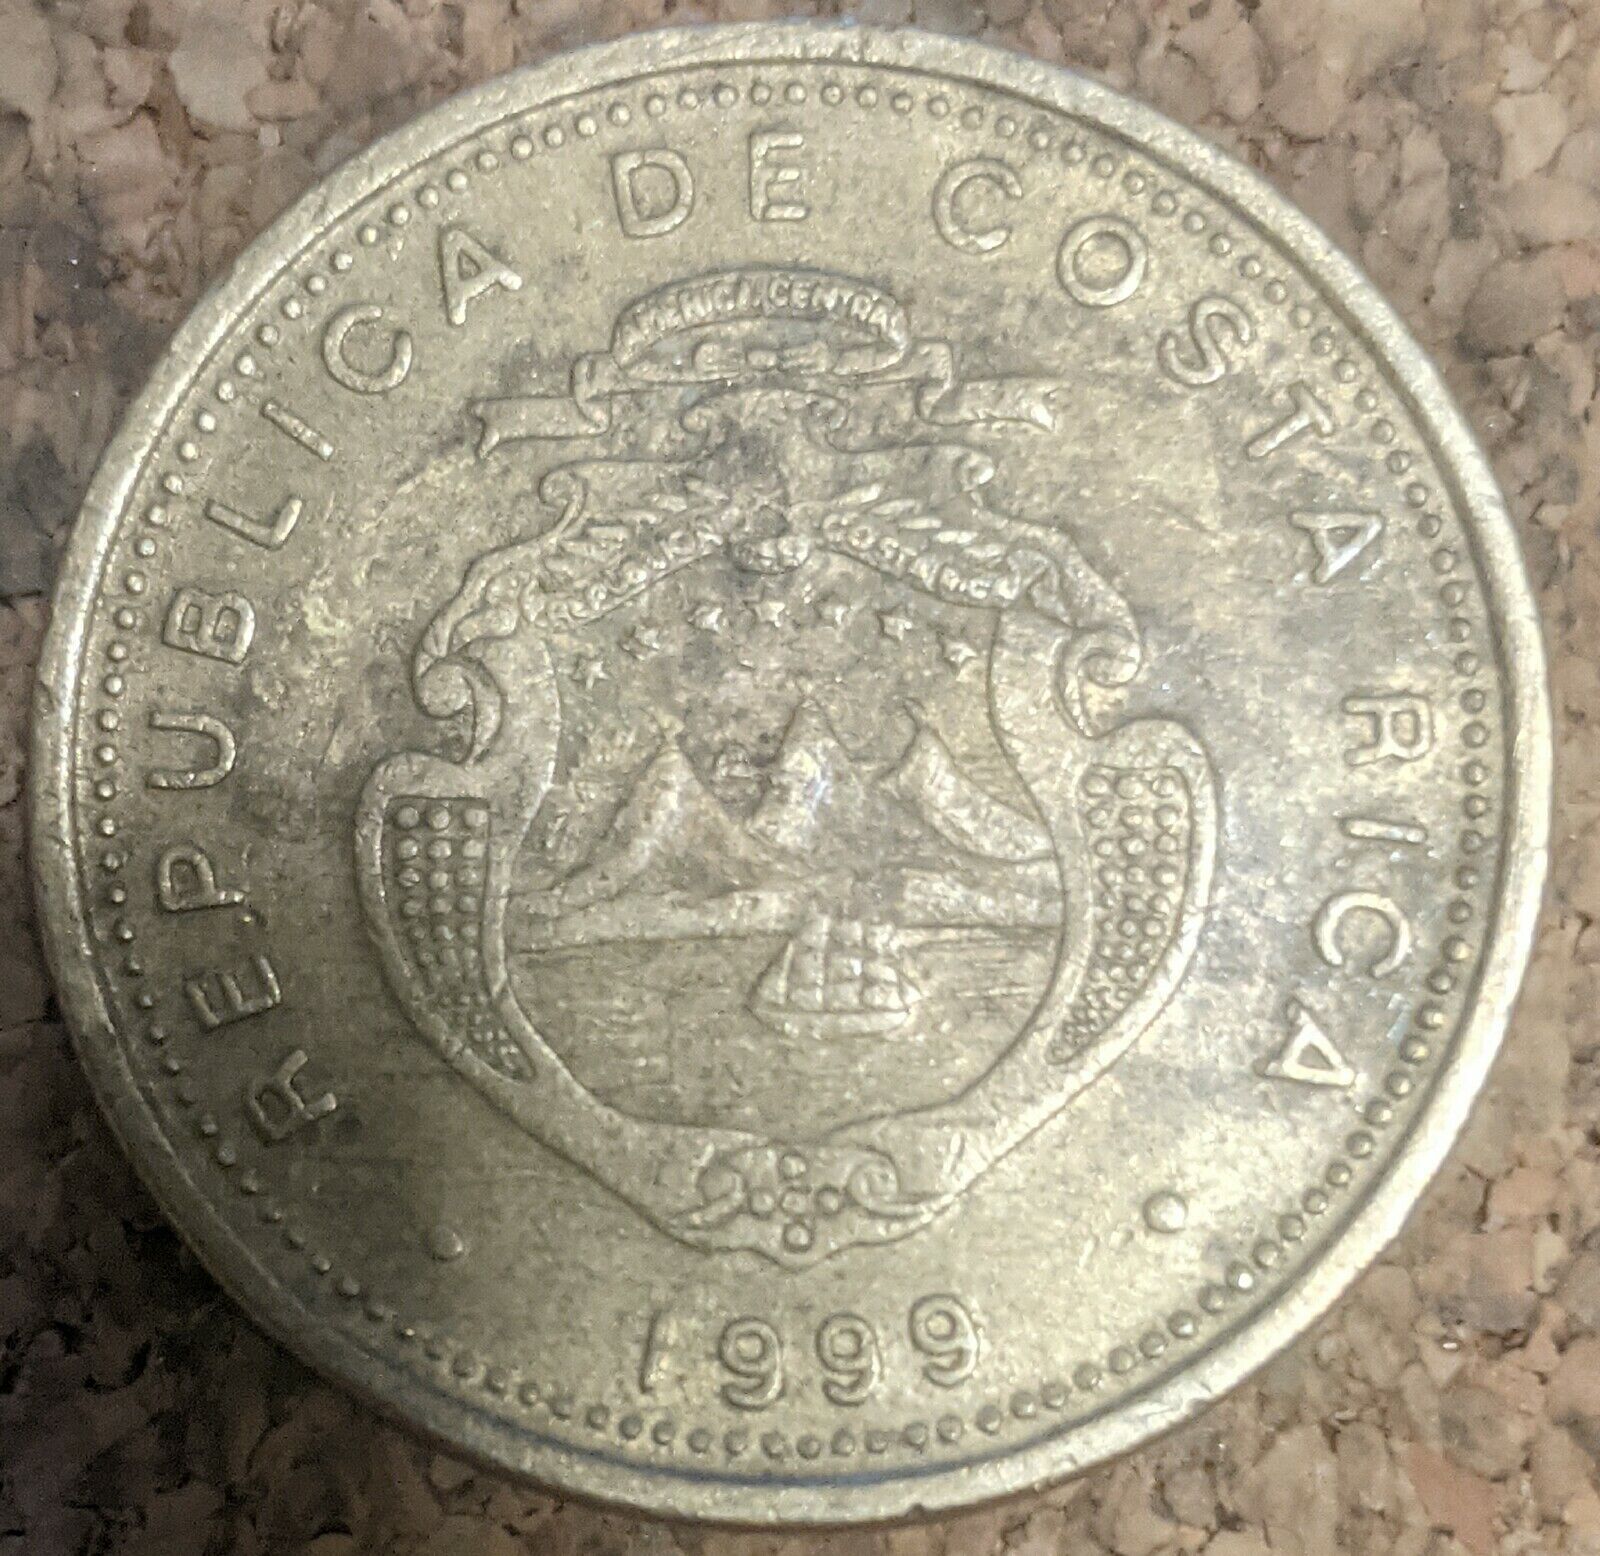 Costa Rica 10 Colones 1999 Coin